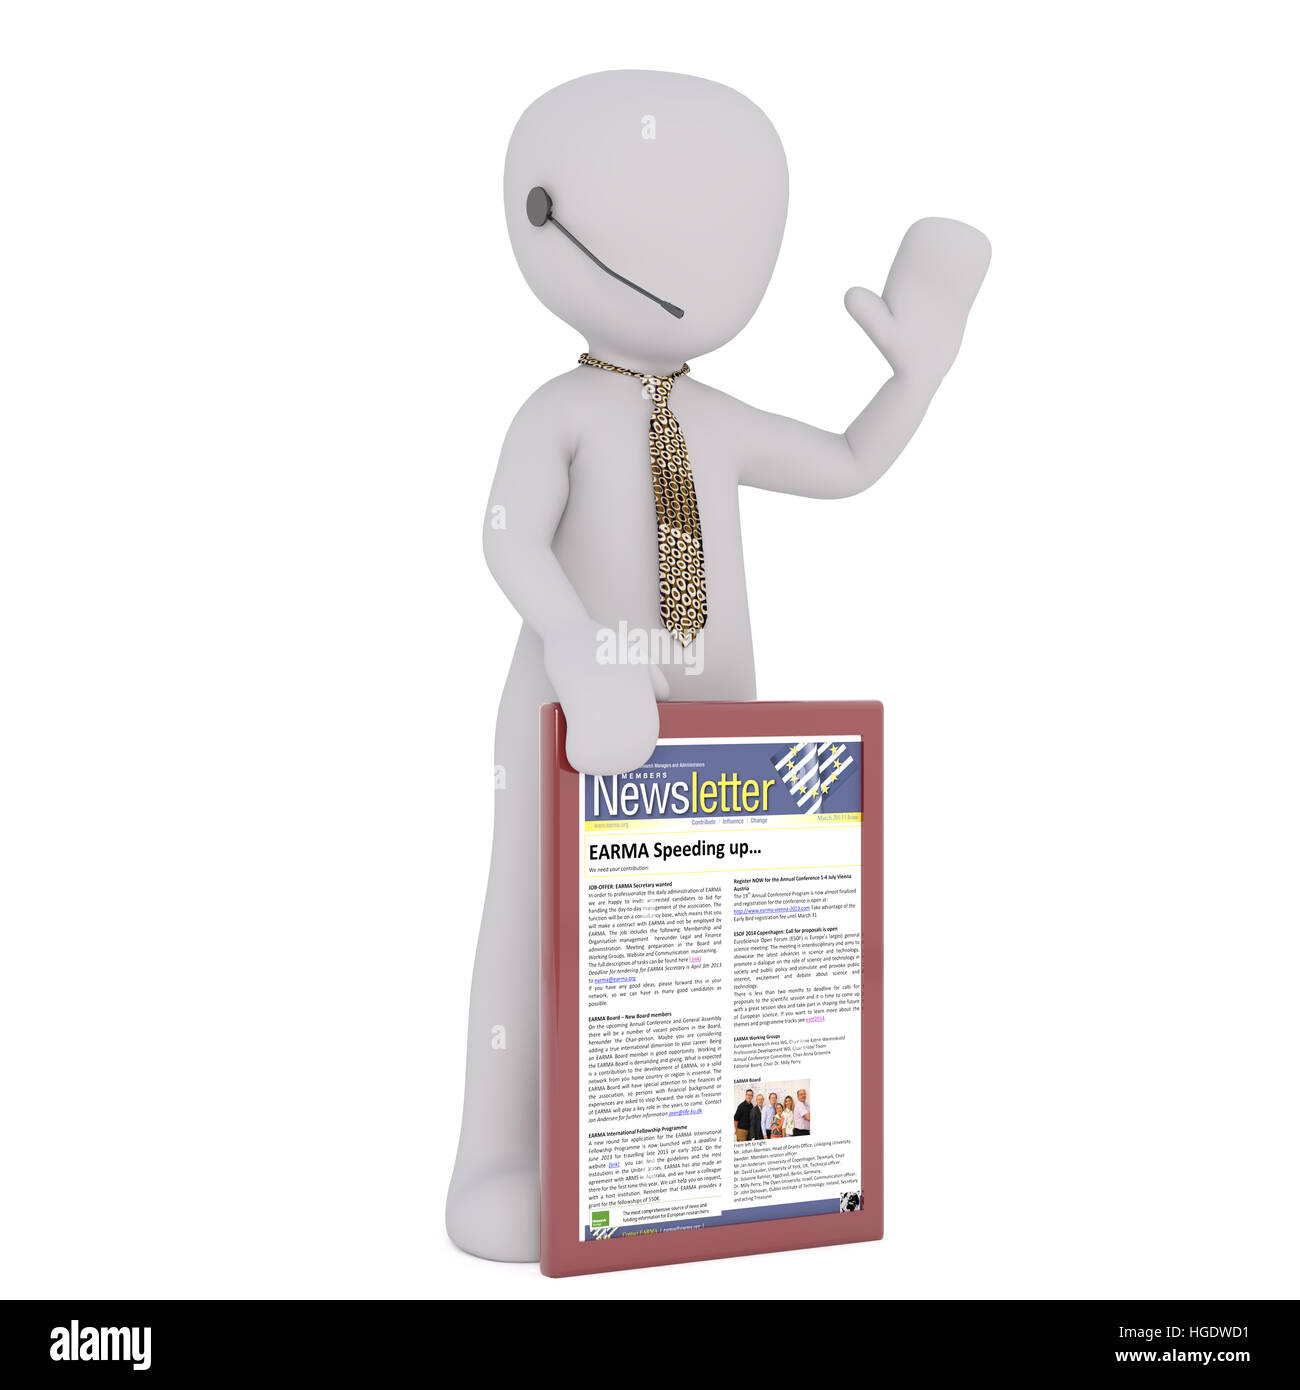 Wehende 3D Figur tragen gold Hals binden und Ohrhörer hält Newsletter vor einem weißen Hintergrund Stockfoto